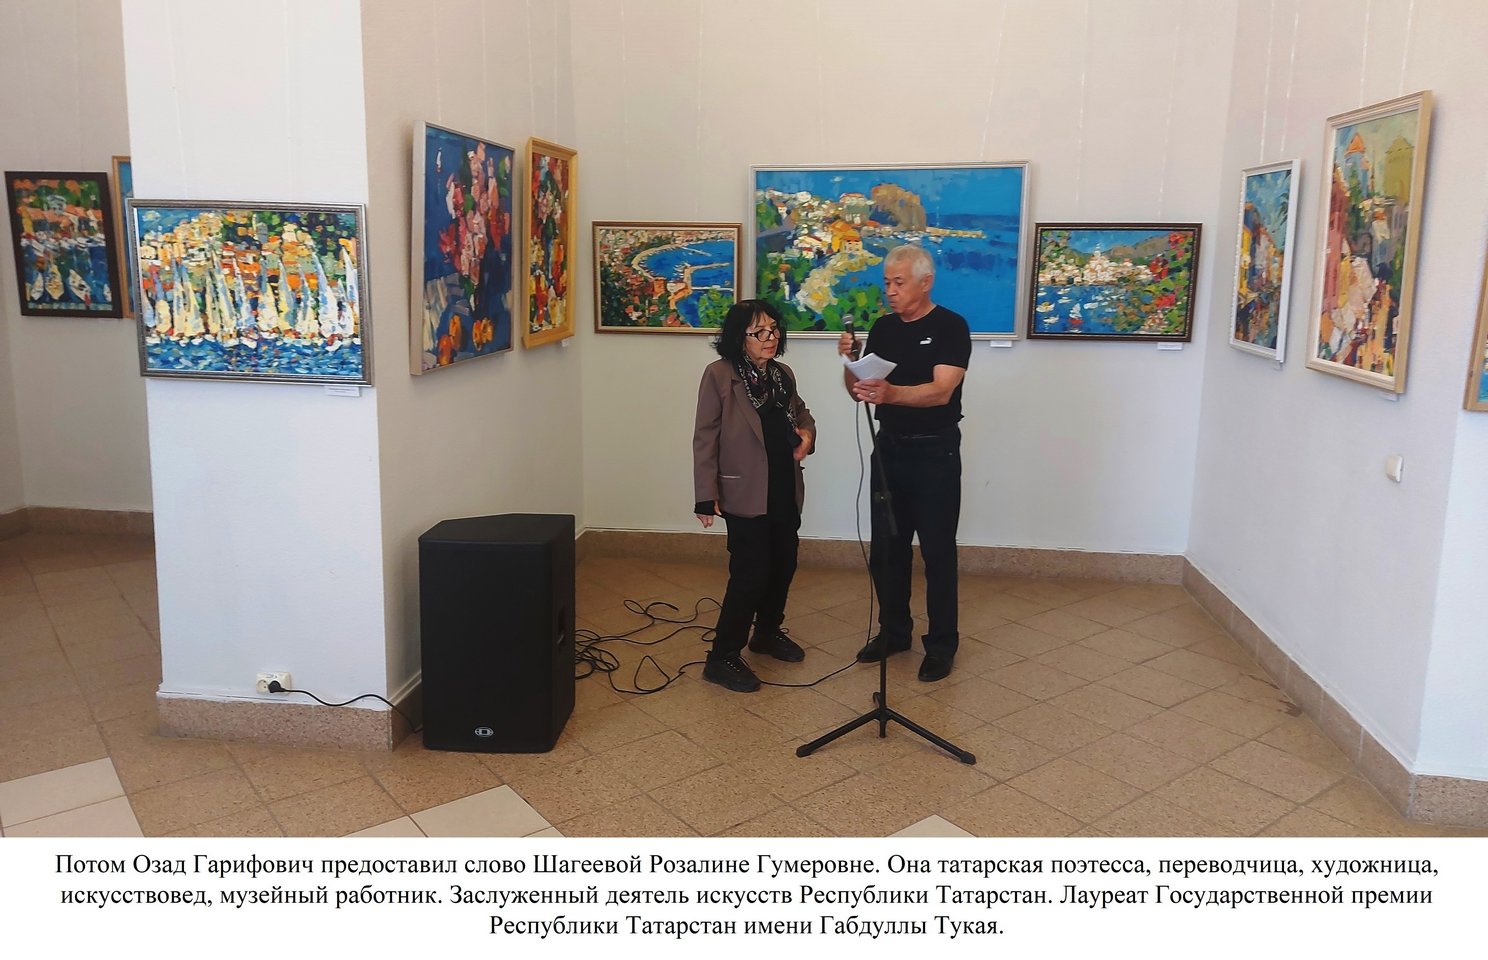 «Цвет странствий»: передвижной персональный проект художника Александра Заярнюка представлен в Казани